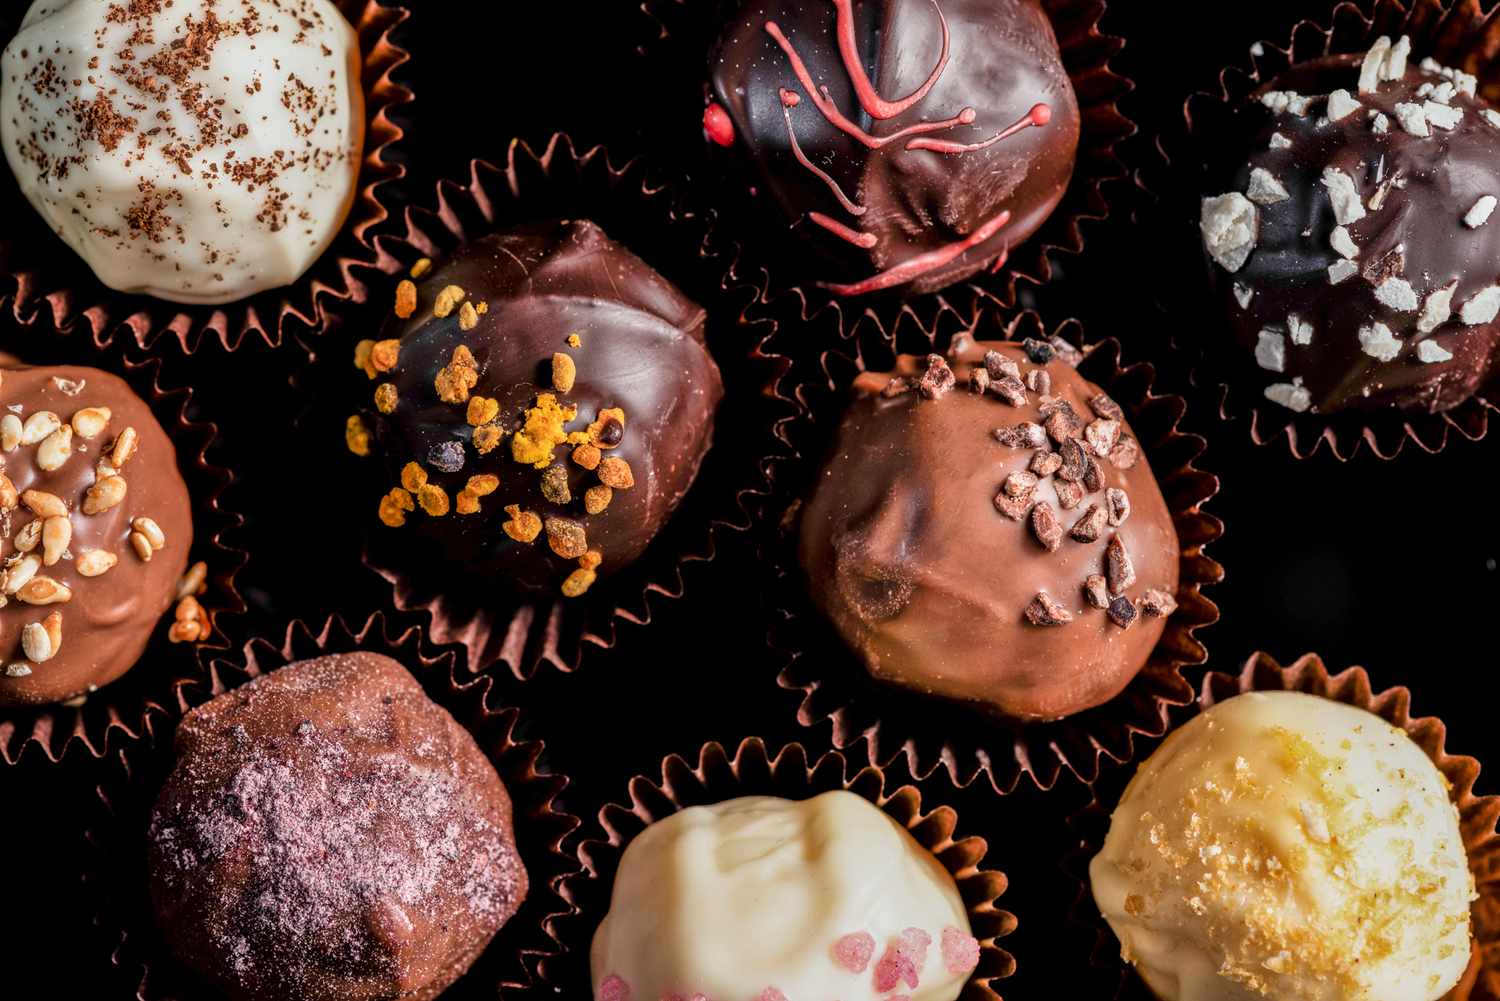 13 dicas para fazer confeitos de chocolate em casa, segundo os profissionais